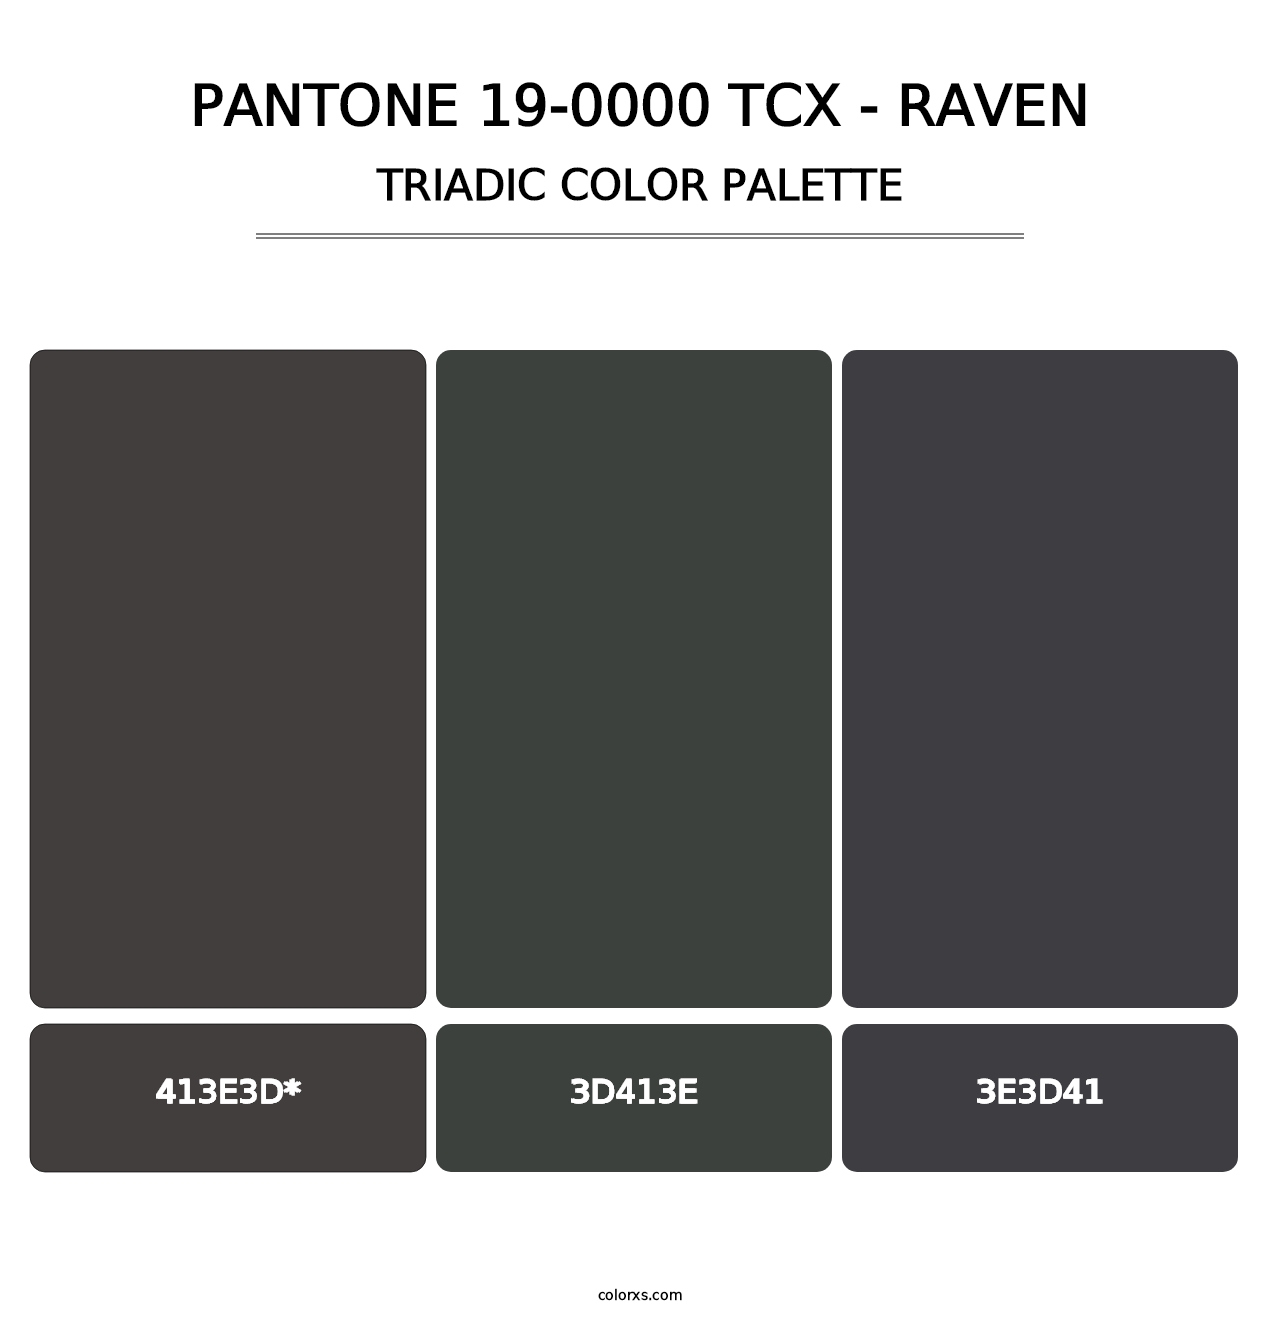 PANTONE 19-0000 TCX - Raven - Triadic Color Palette